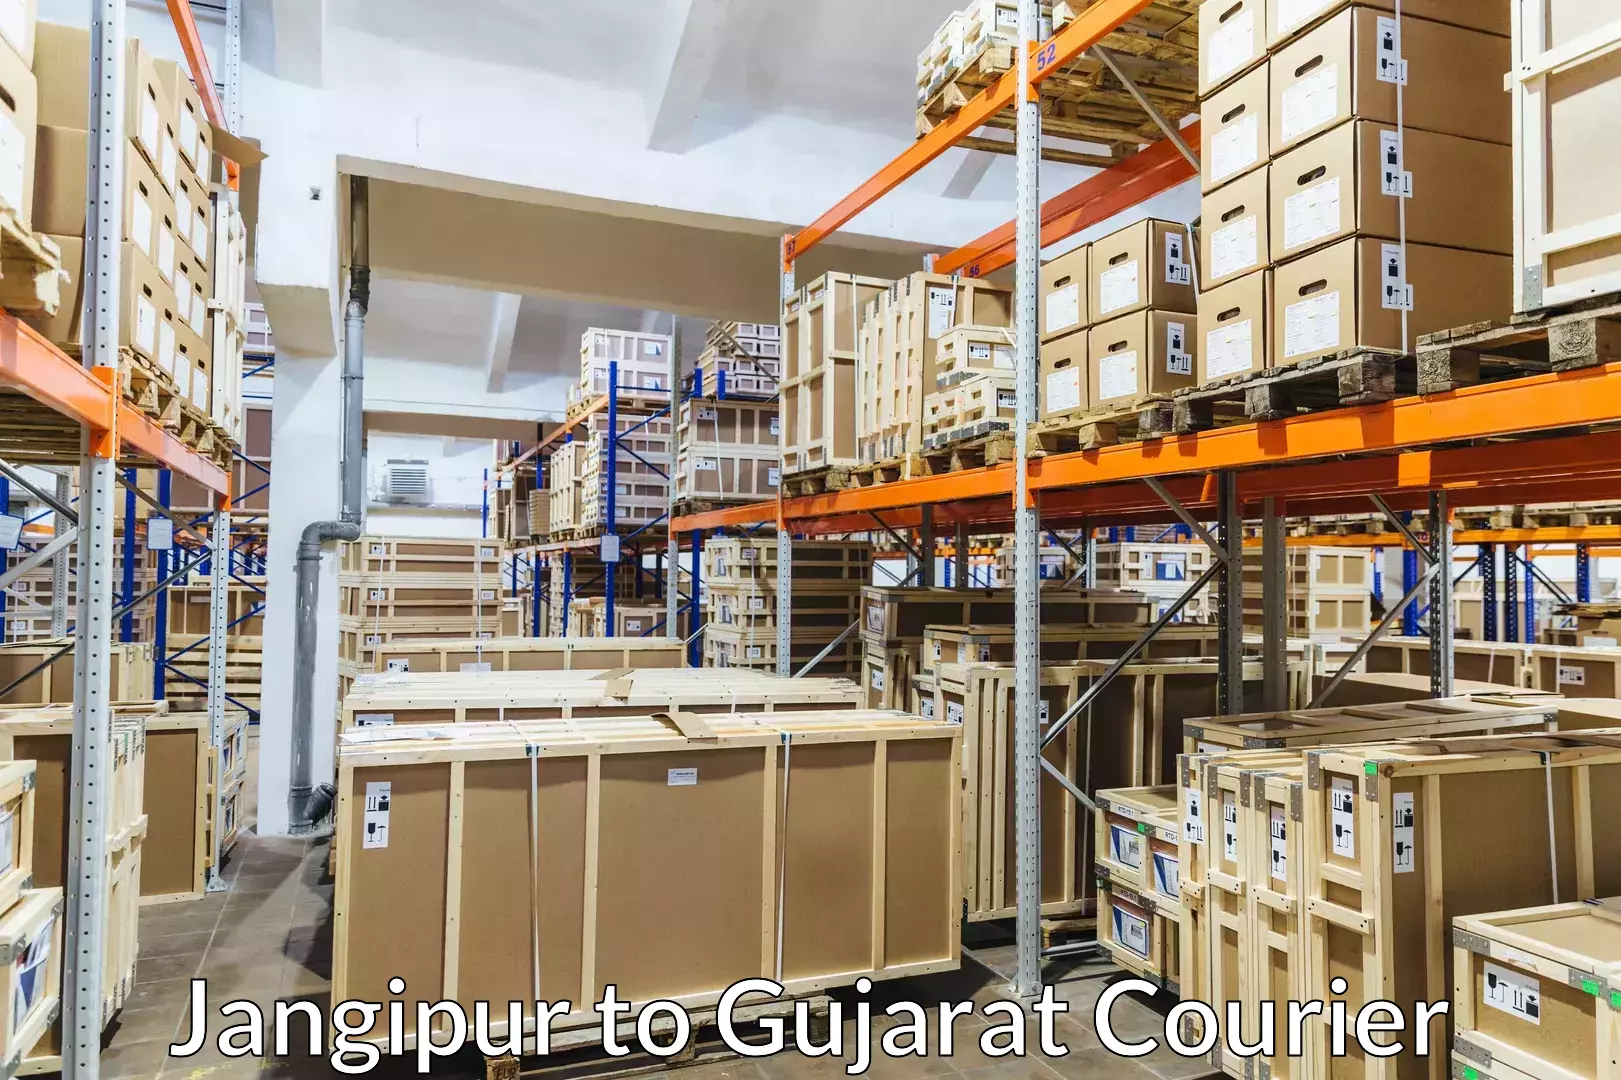 Baggage transport network Jangipur to Gujarat